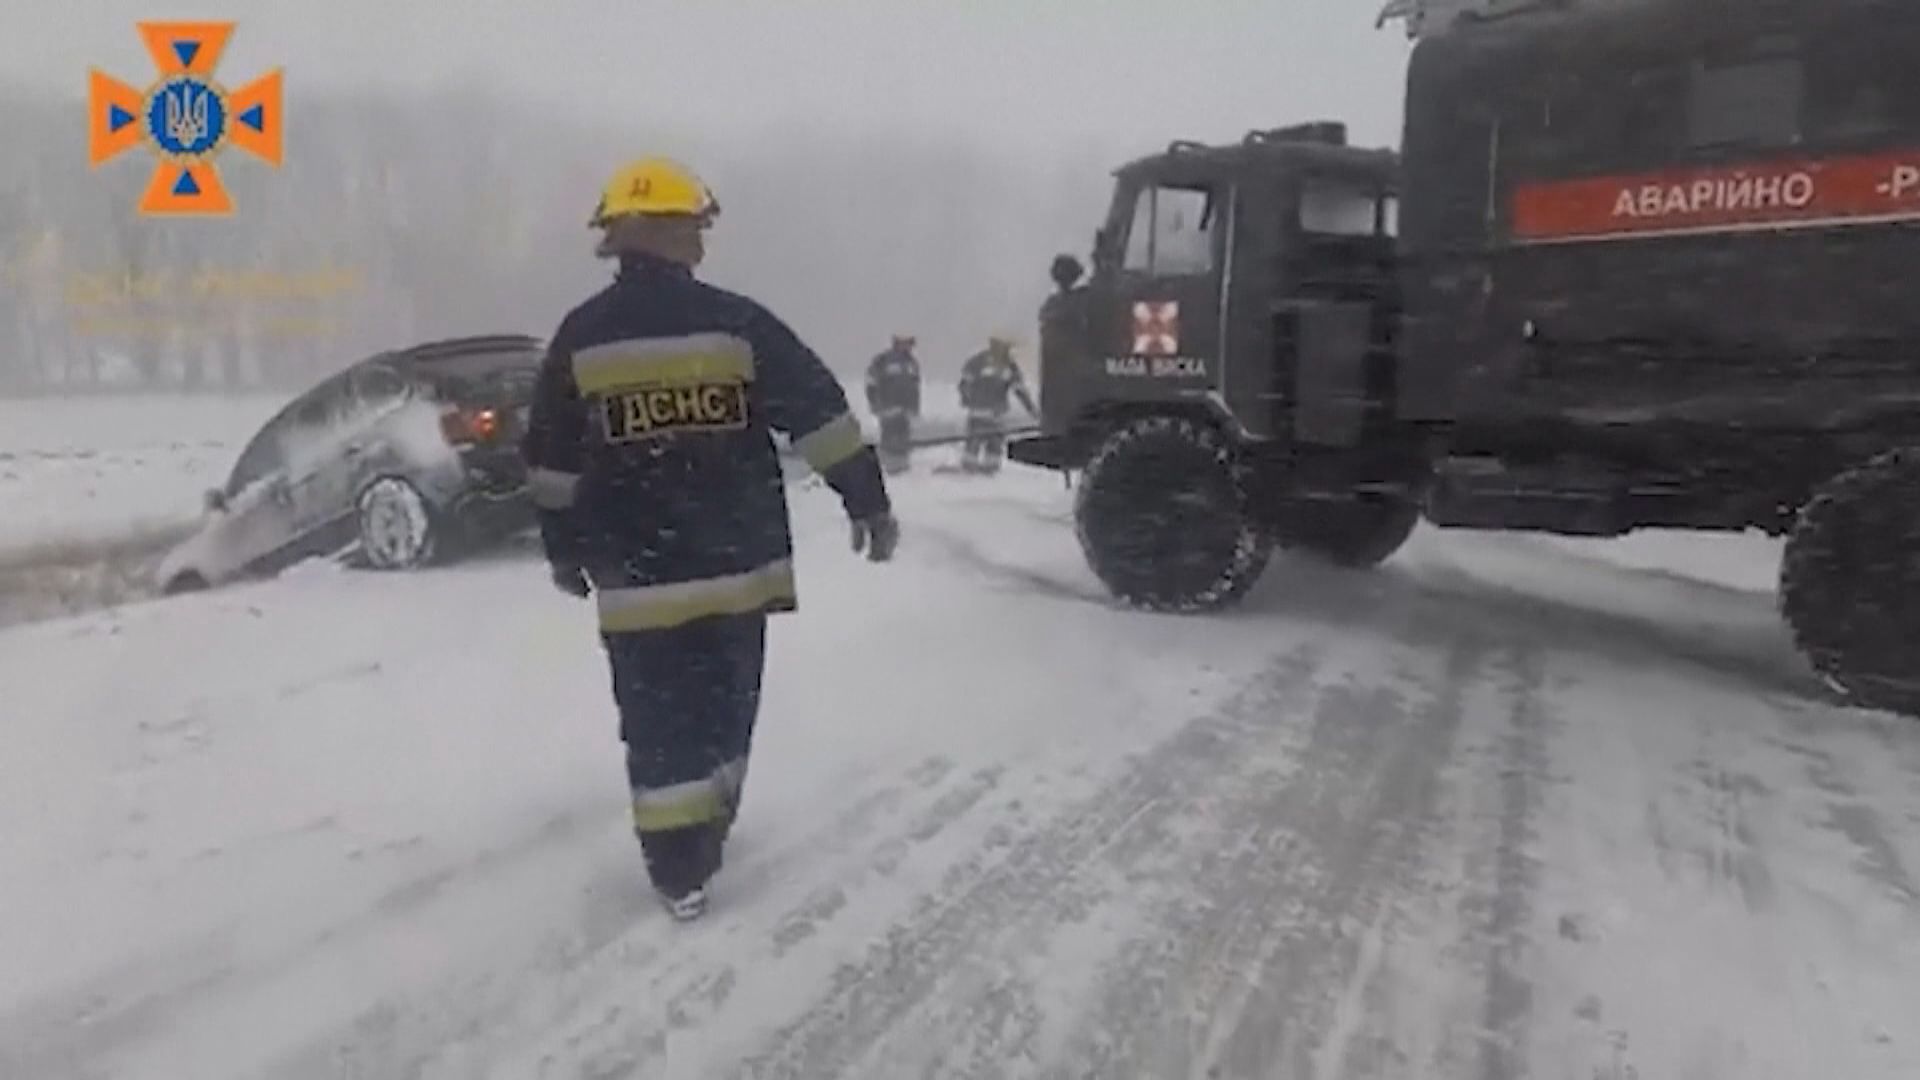 烏克蘭和俄羅斯受暴風雪侵襲近200萬人斷電